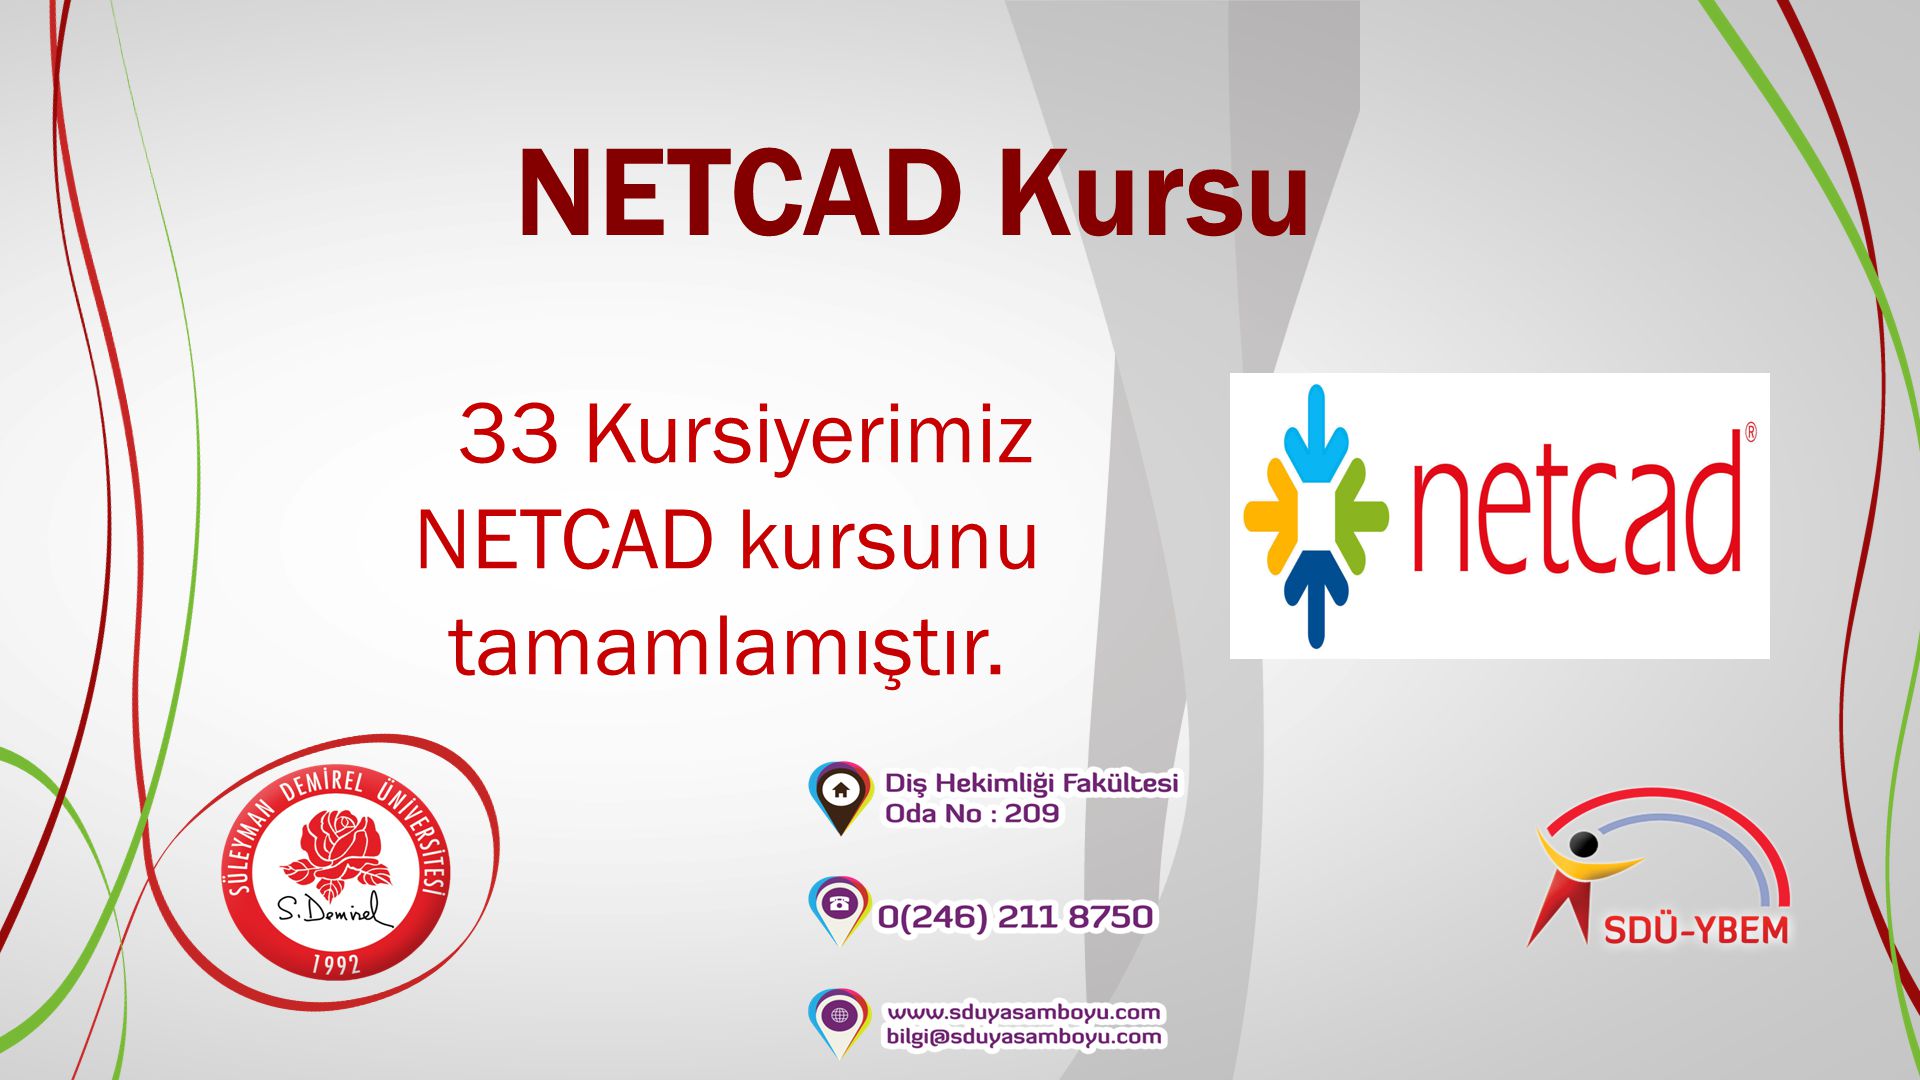 33 Kursiyerimiz NETCAD kursunu tamamlamıştır.